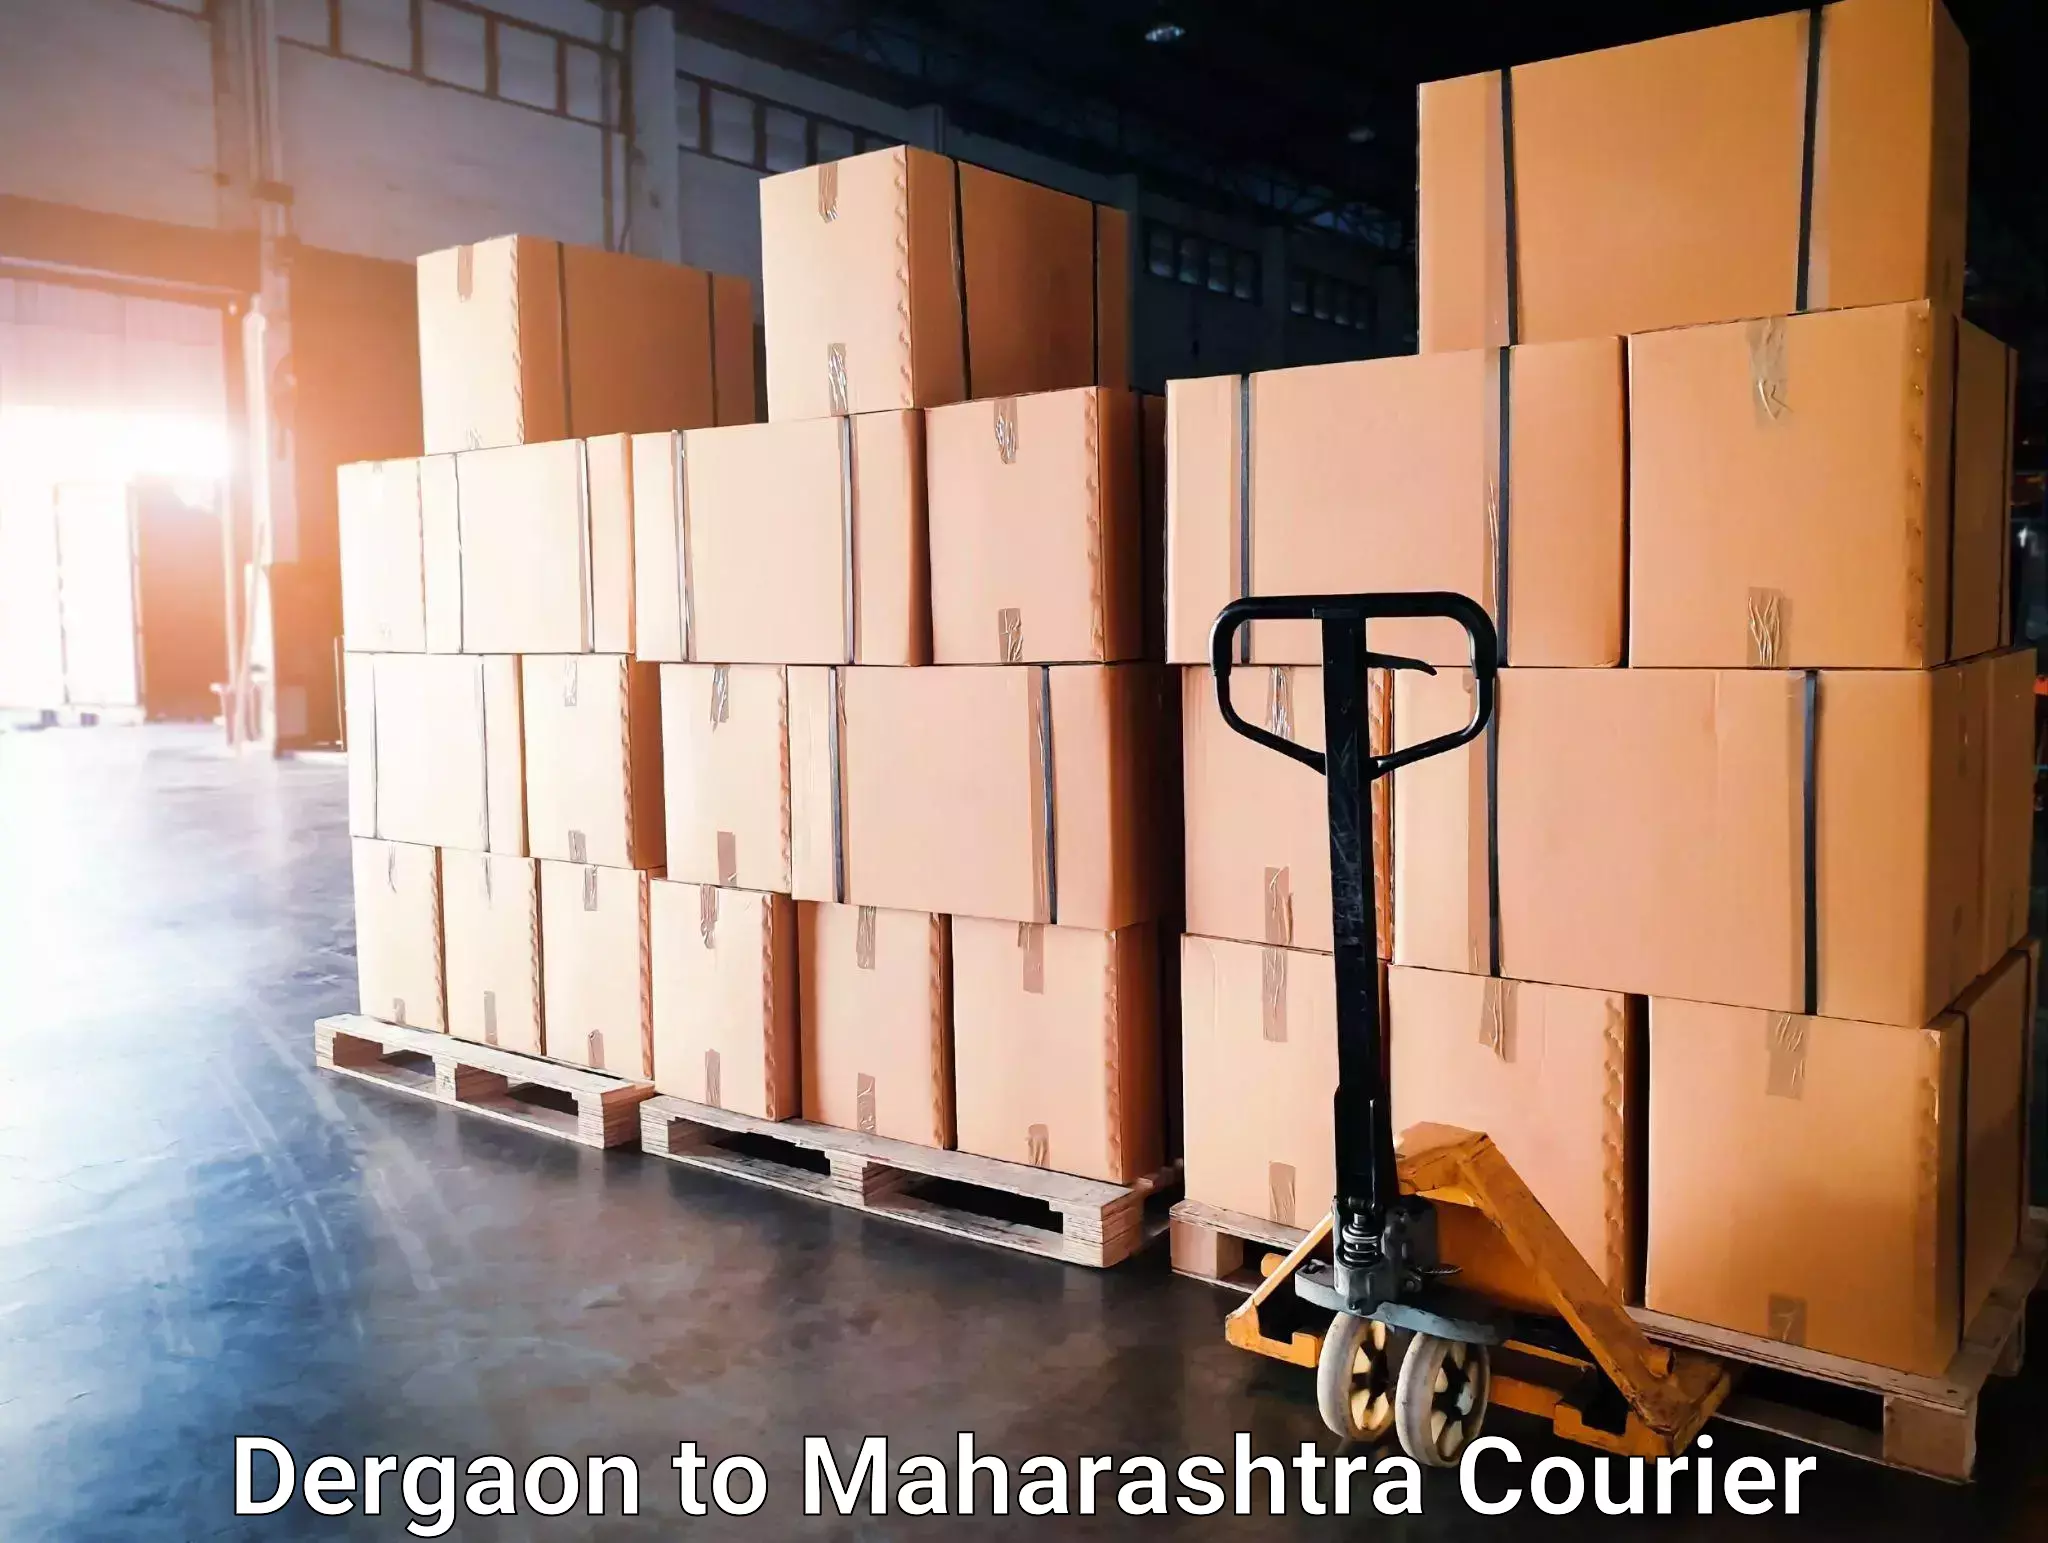 International parcel service Dergaon to Ballarpur